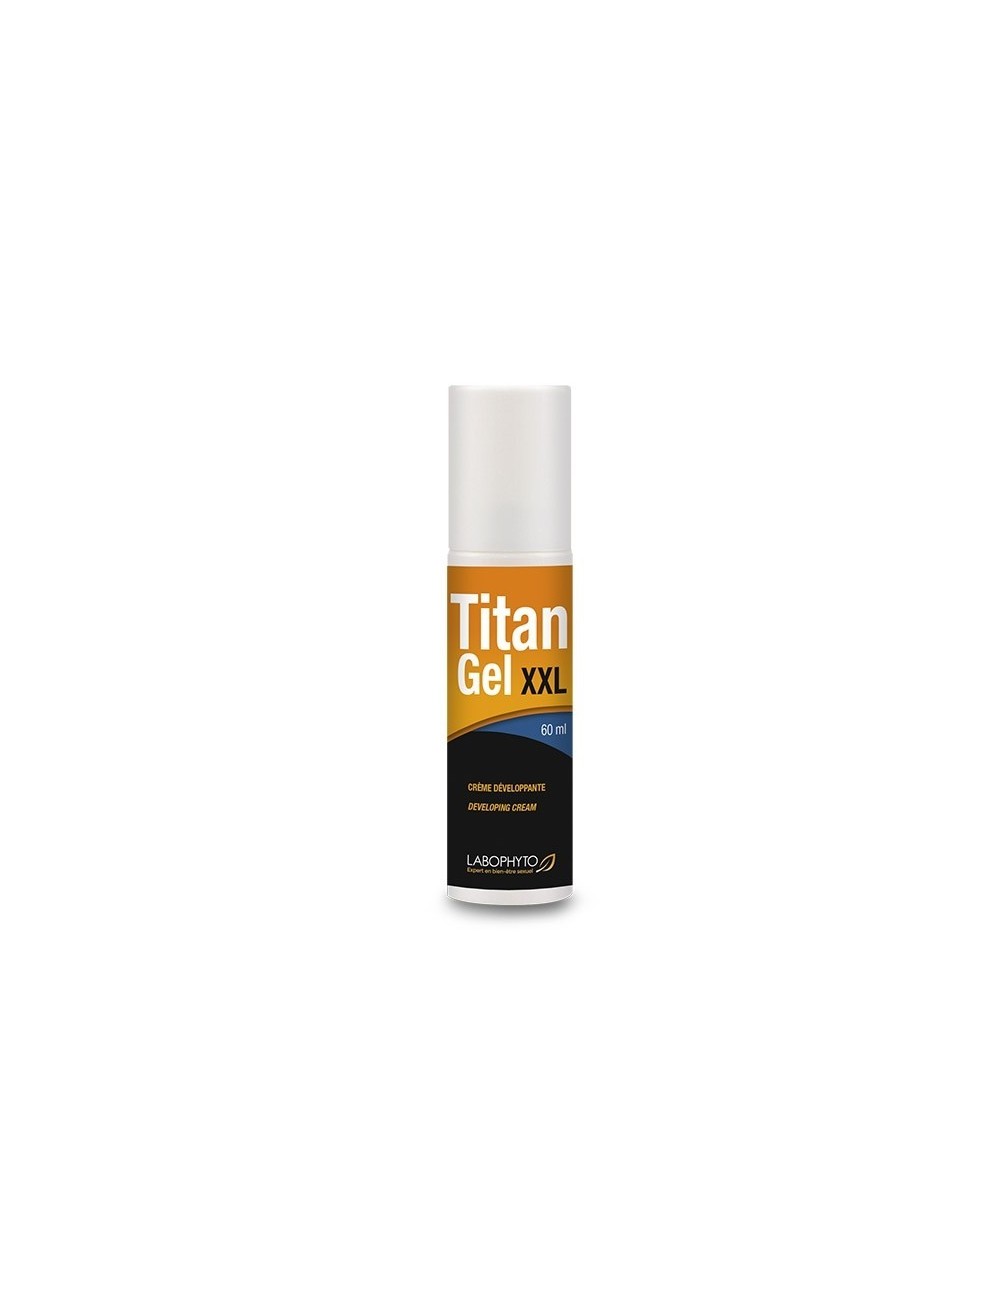 Titan XXL Gel 60 ml pour homme - LAB-3803 - Aphrodisiaques - Labophyto